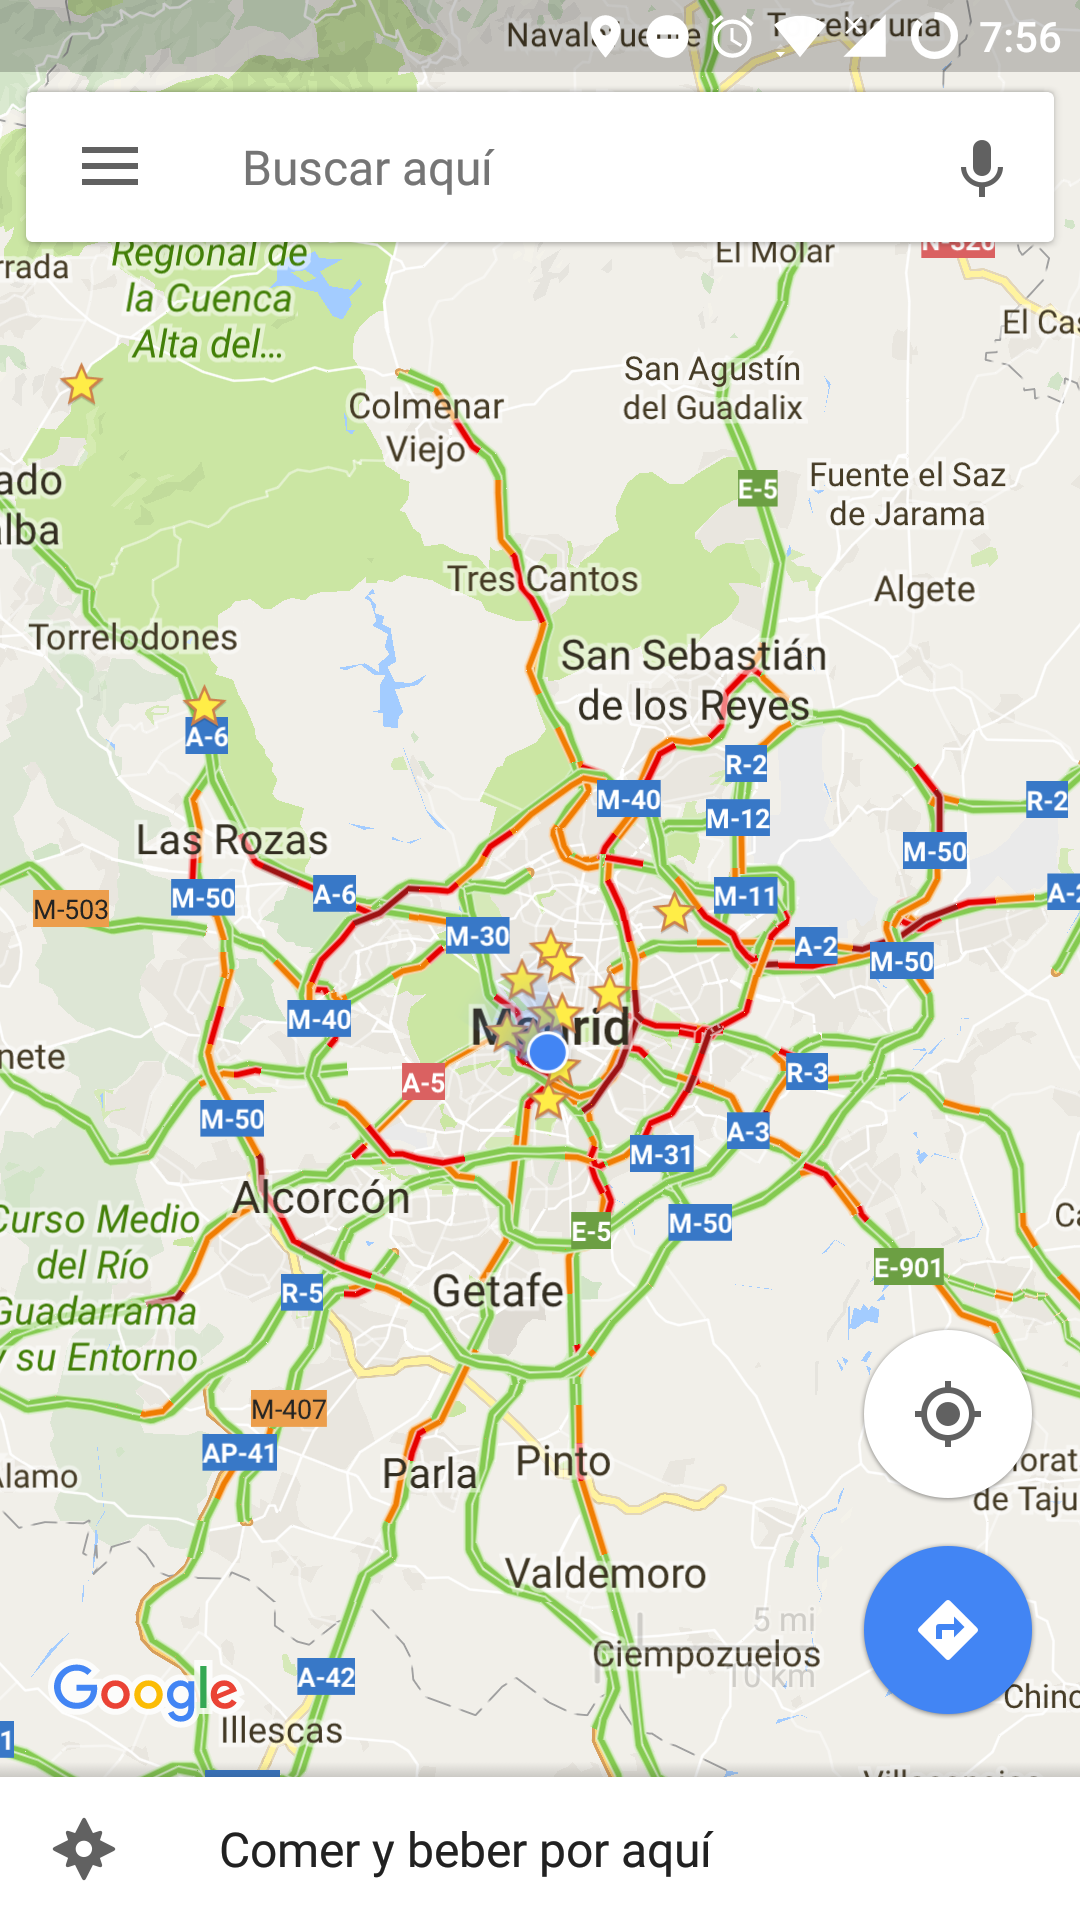 Tráfico en tiempo real de Madrid visto con la aplicación de Google Maps